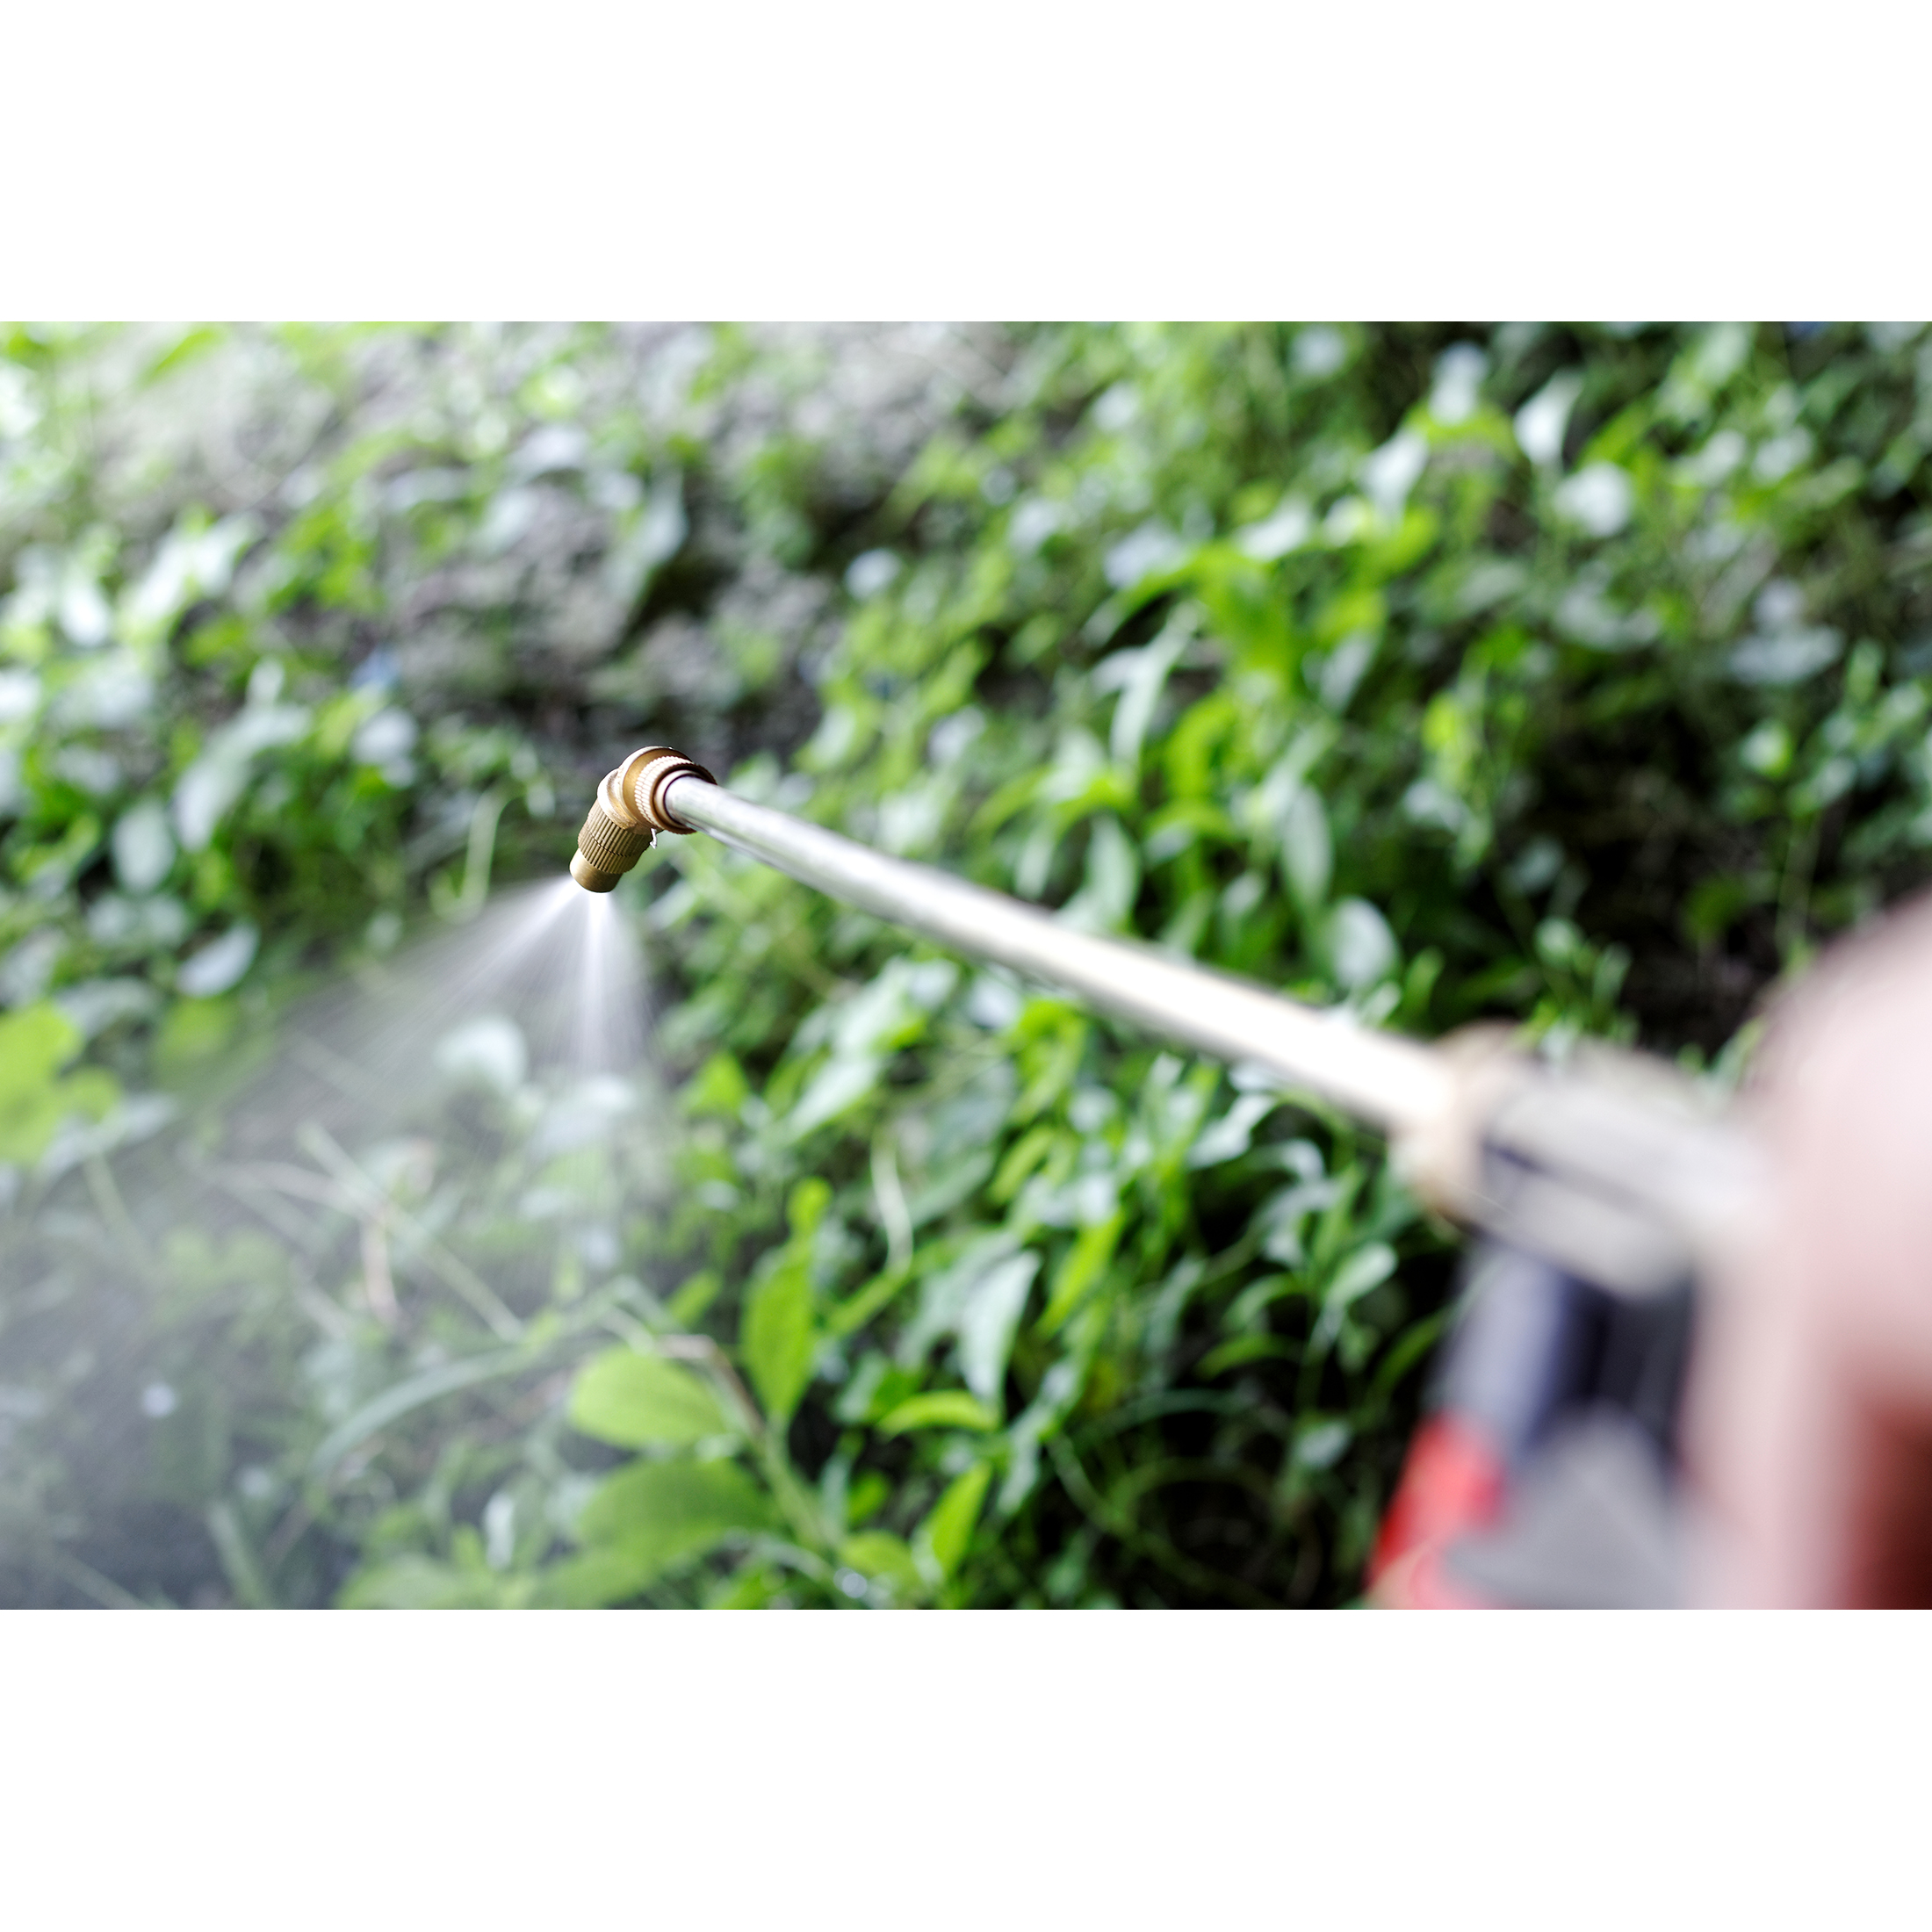 Southern Ag Crossbow Herbicide, Brush & Vegetation Killer 1 Quart - image 3 of 4